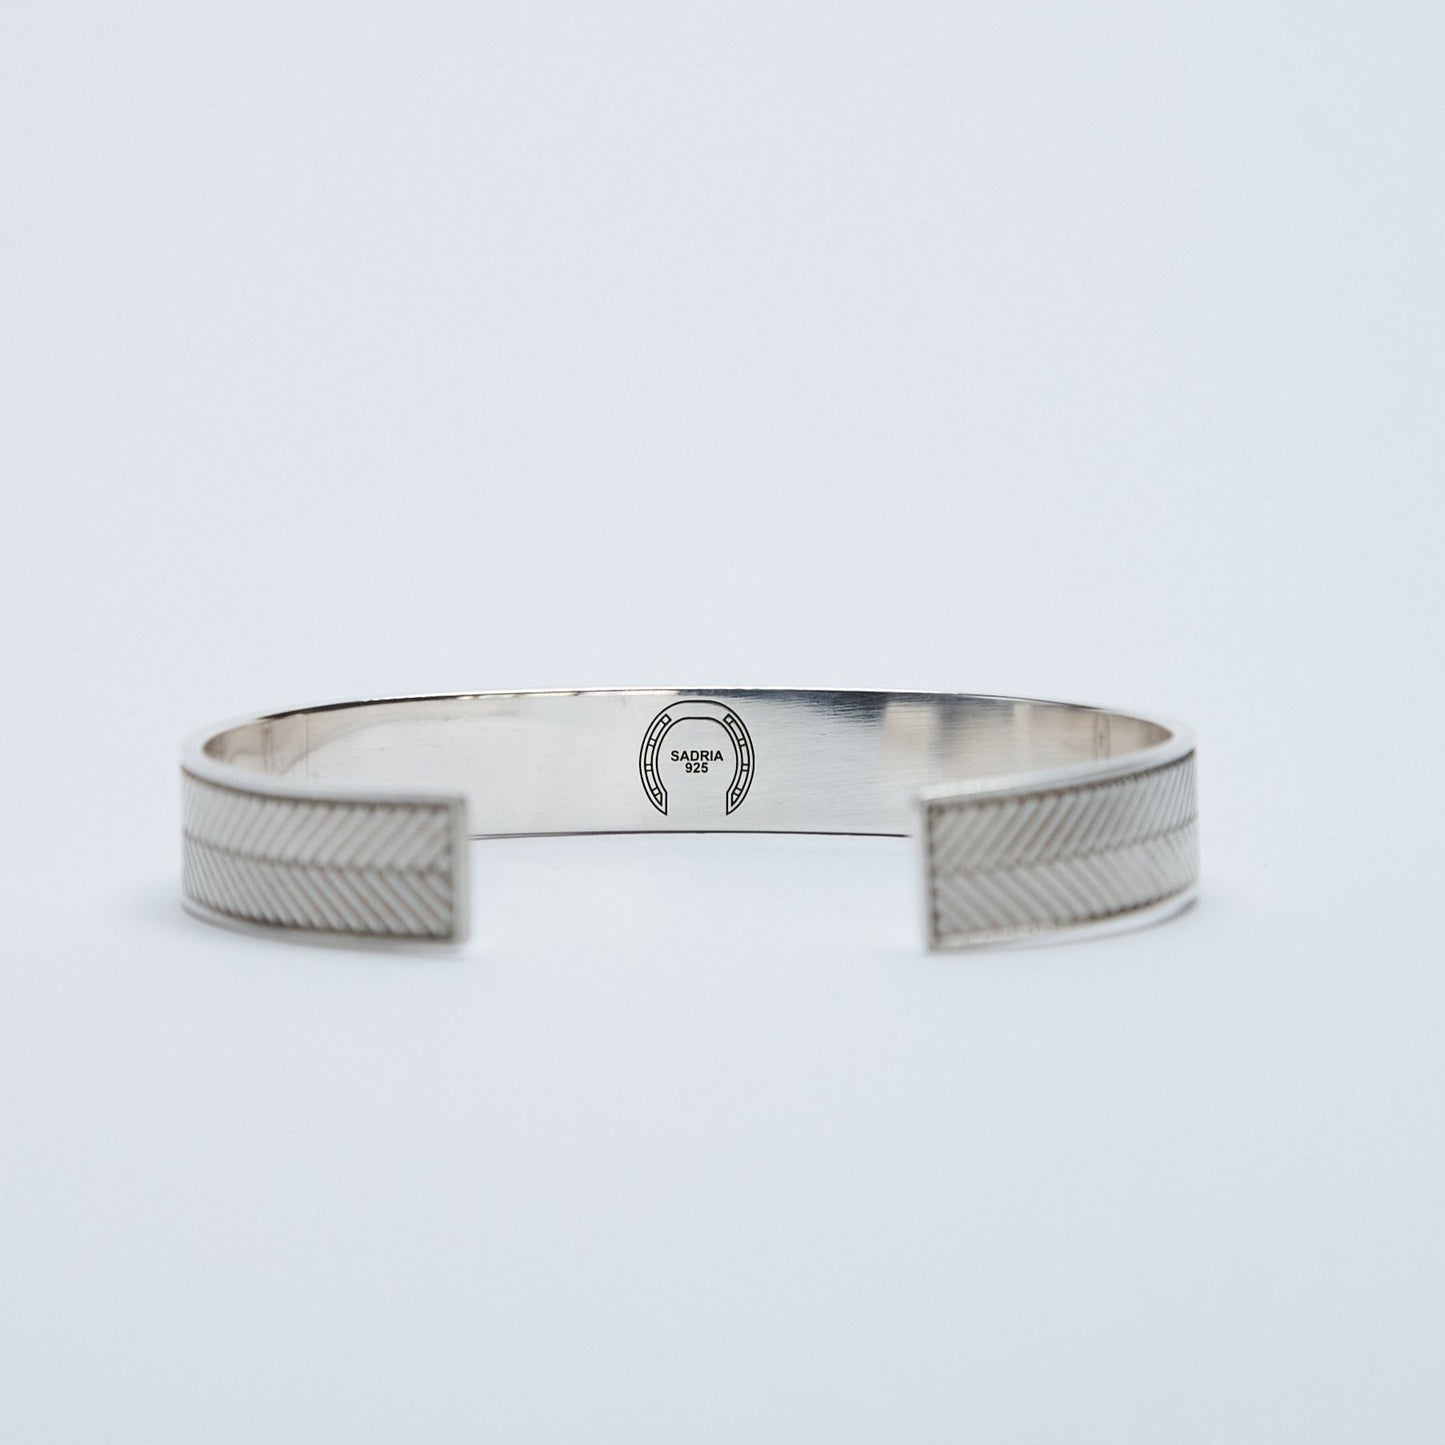 Silver Bracelet with Herringbone Engraving - Narrow